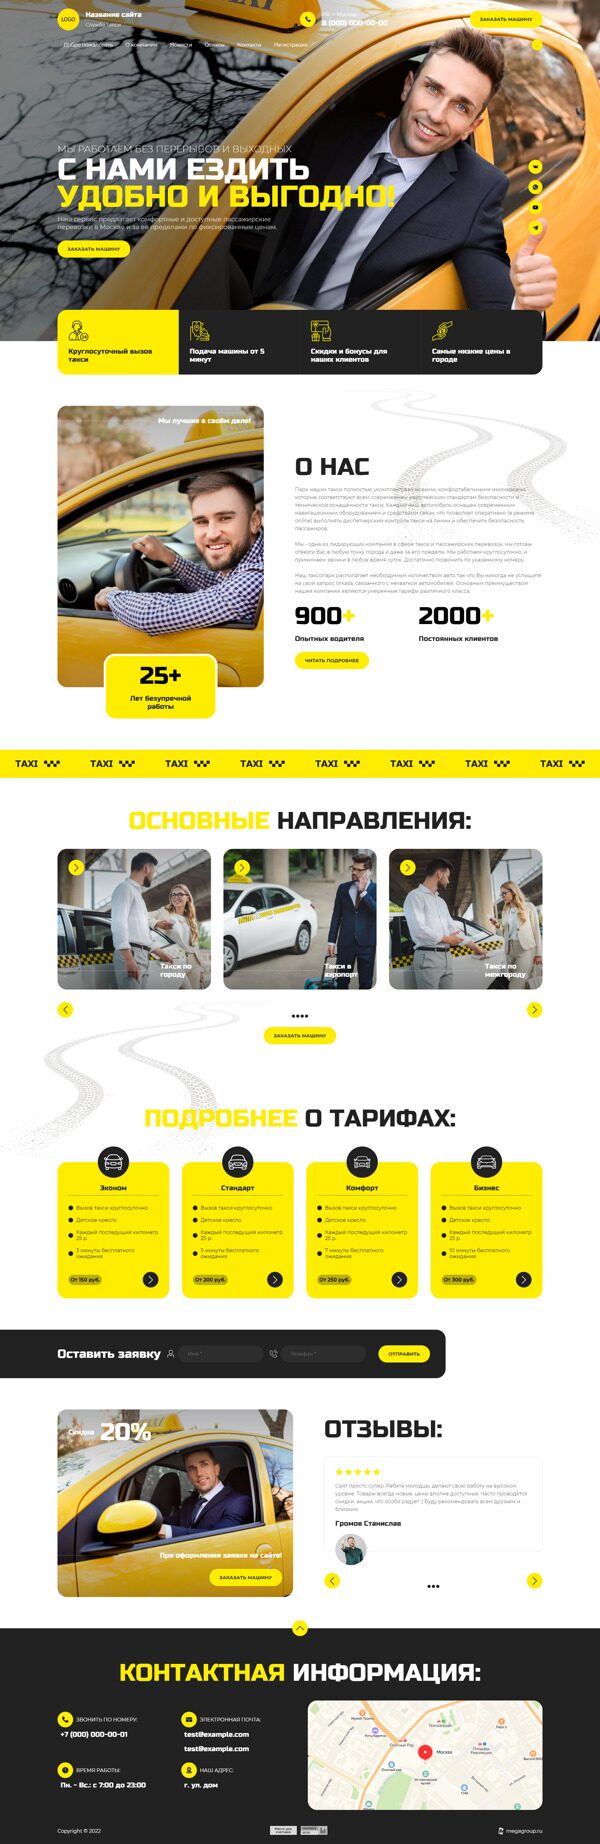 Готовый Сайт-Бизнес № 4432290 - Услуги такси (Десктопная версия)